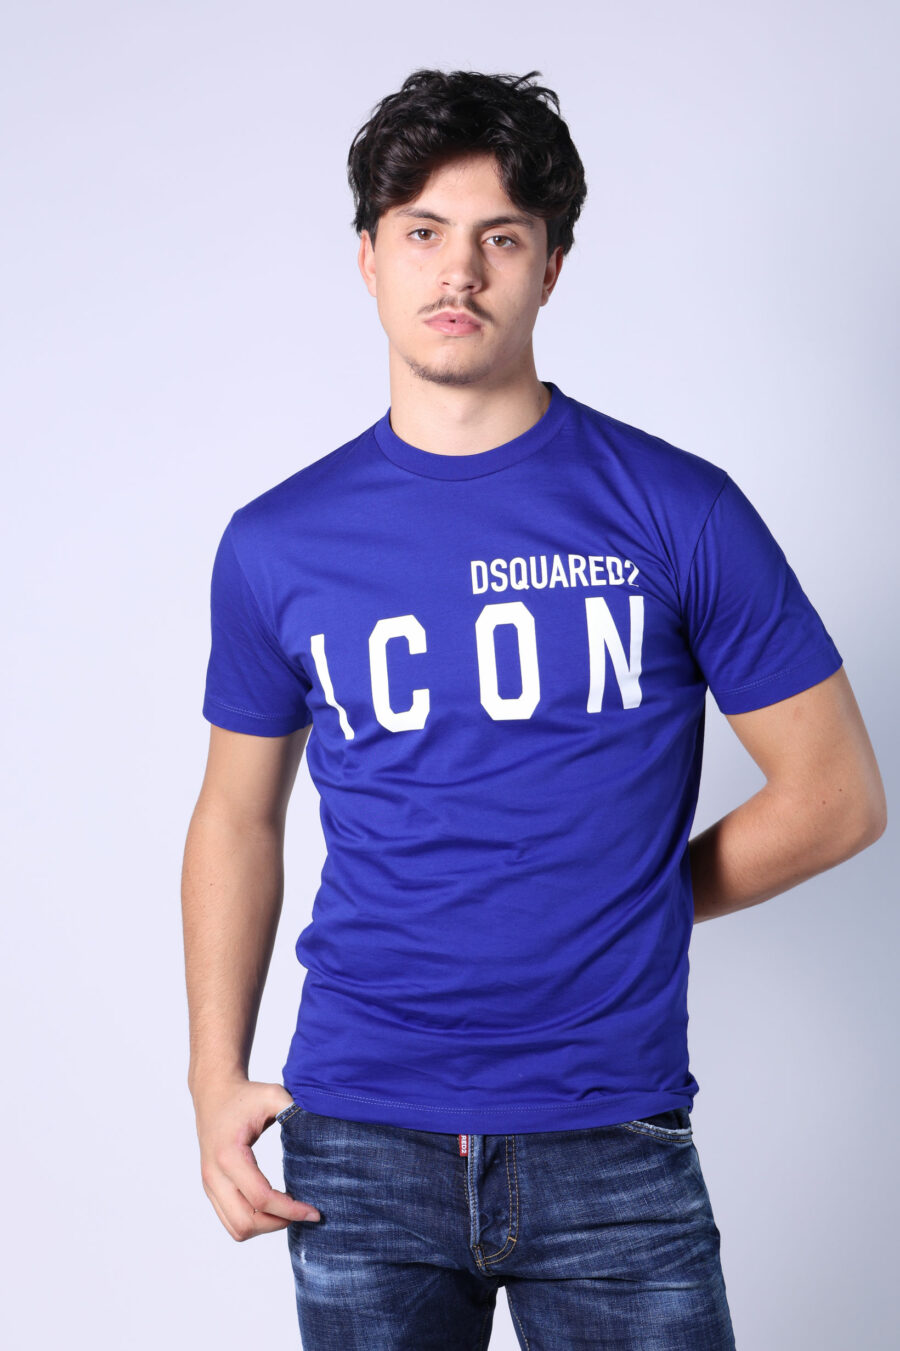 Electric blue t-shirt with white "icon" maxilogo - Untitled Catalog 05399